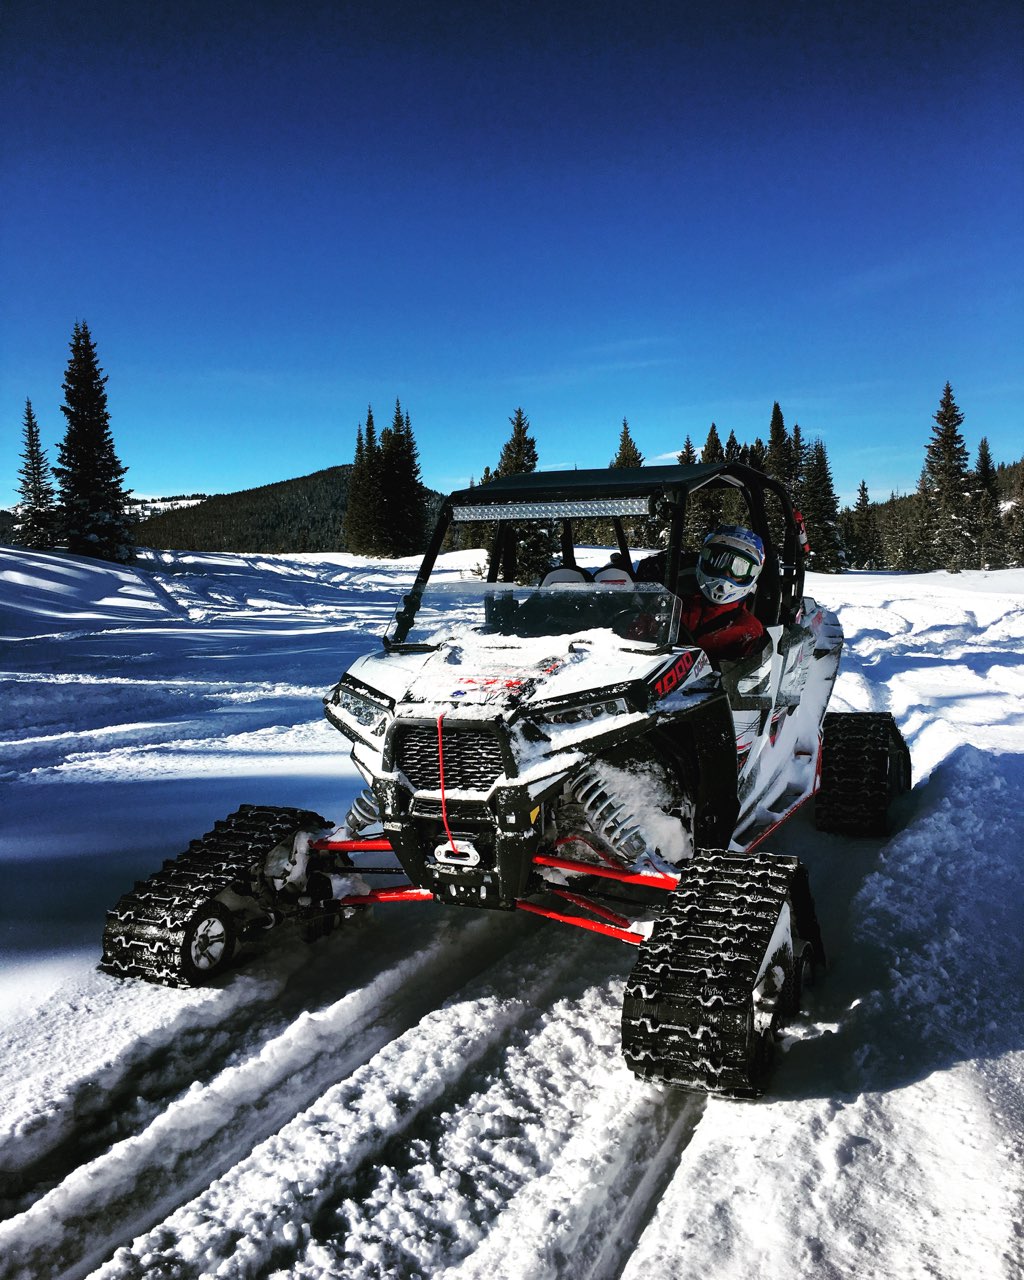 ATV rental in the snow